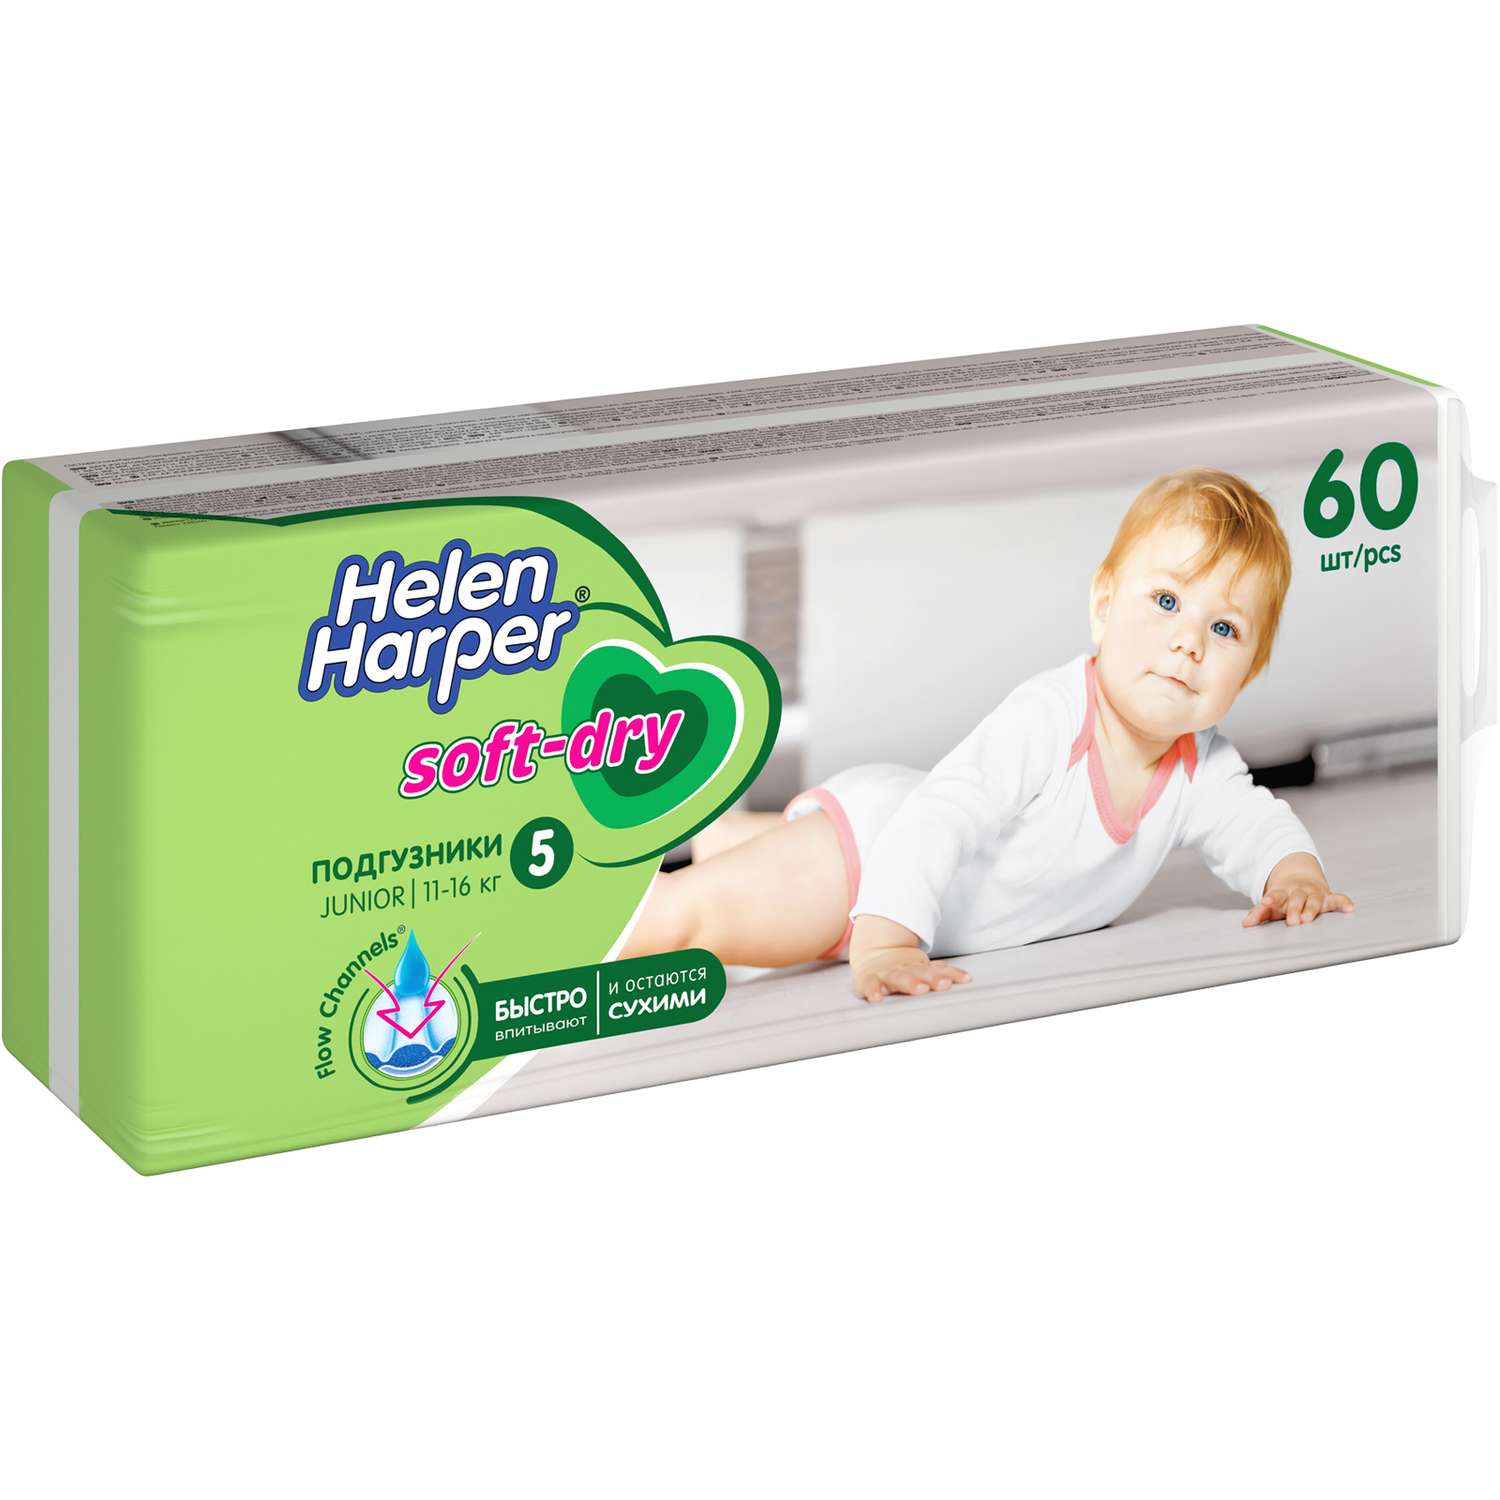 Подгузники детские Helen Harper Soft and Dry размер 5/Junior 11-16 кг 60 шт. - фото 3